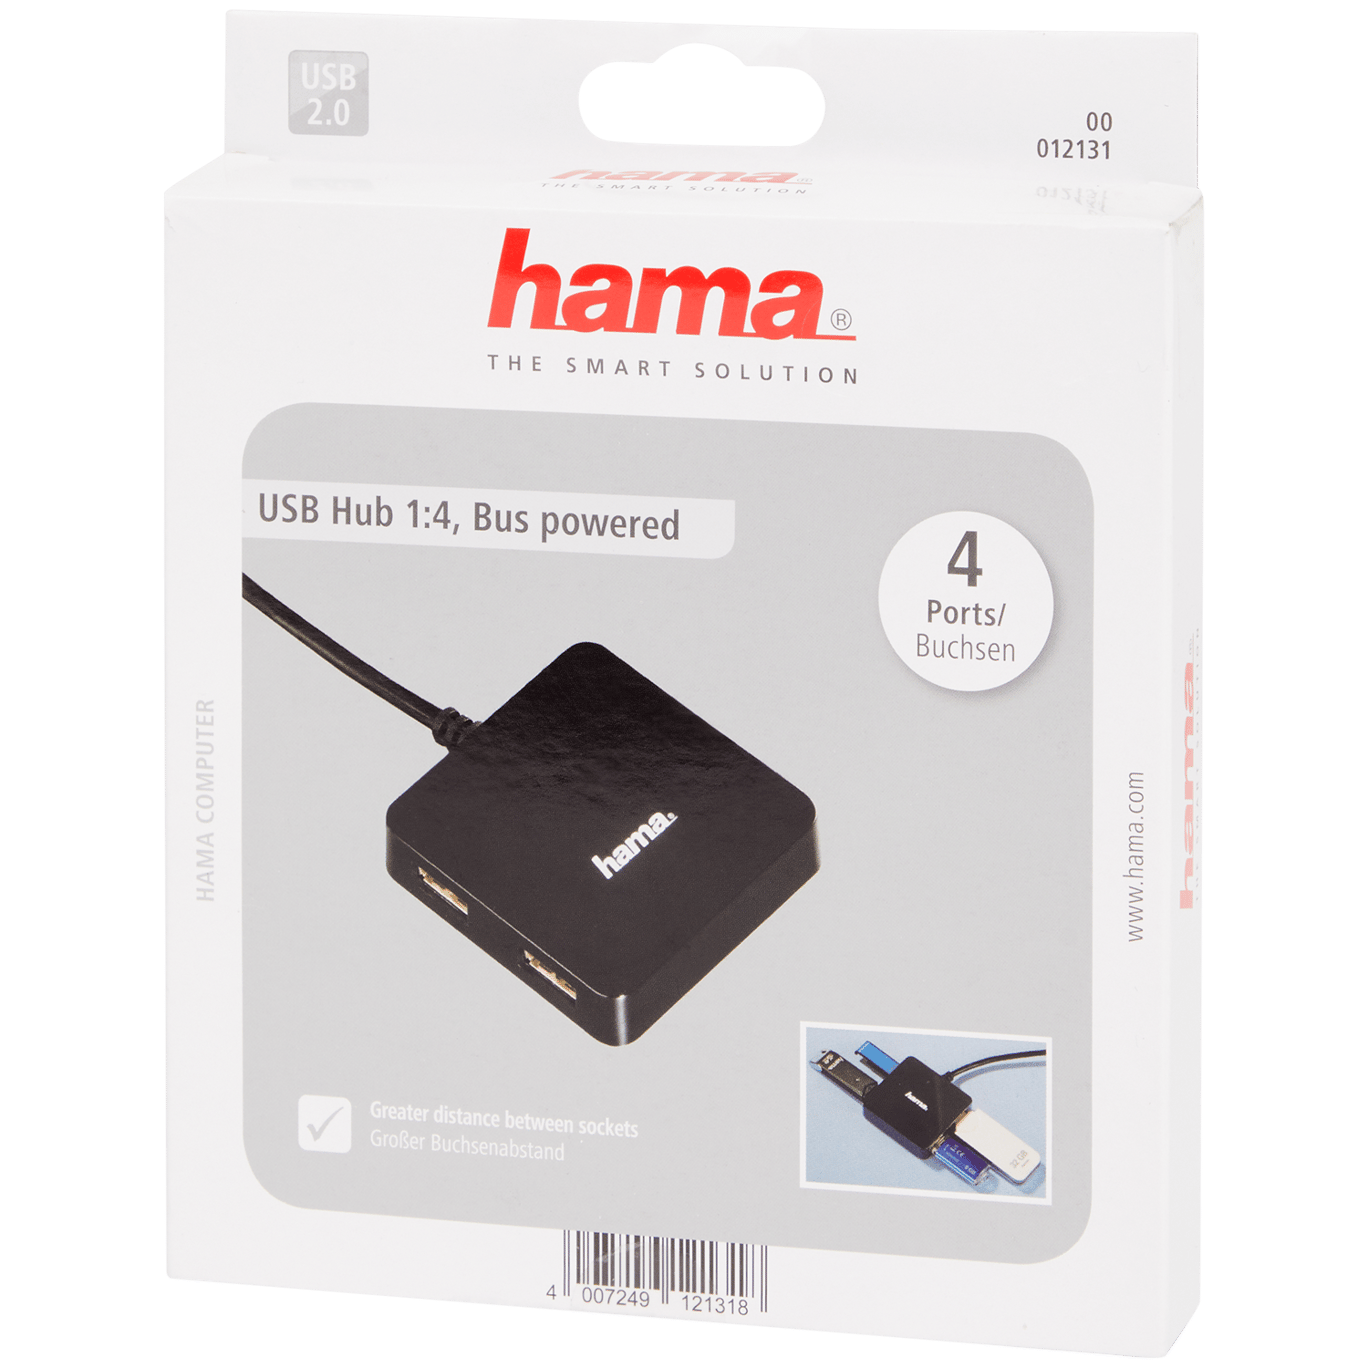 Hama USB 2.0 HUB